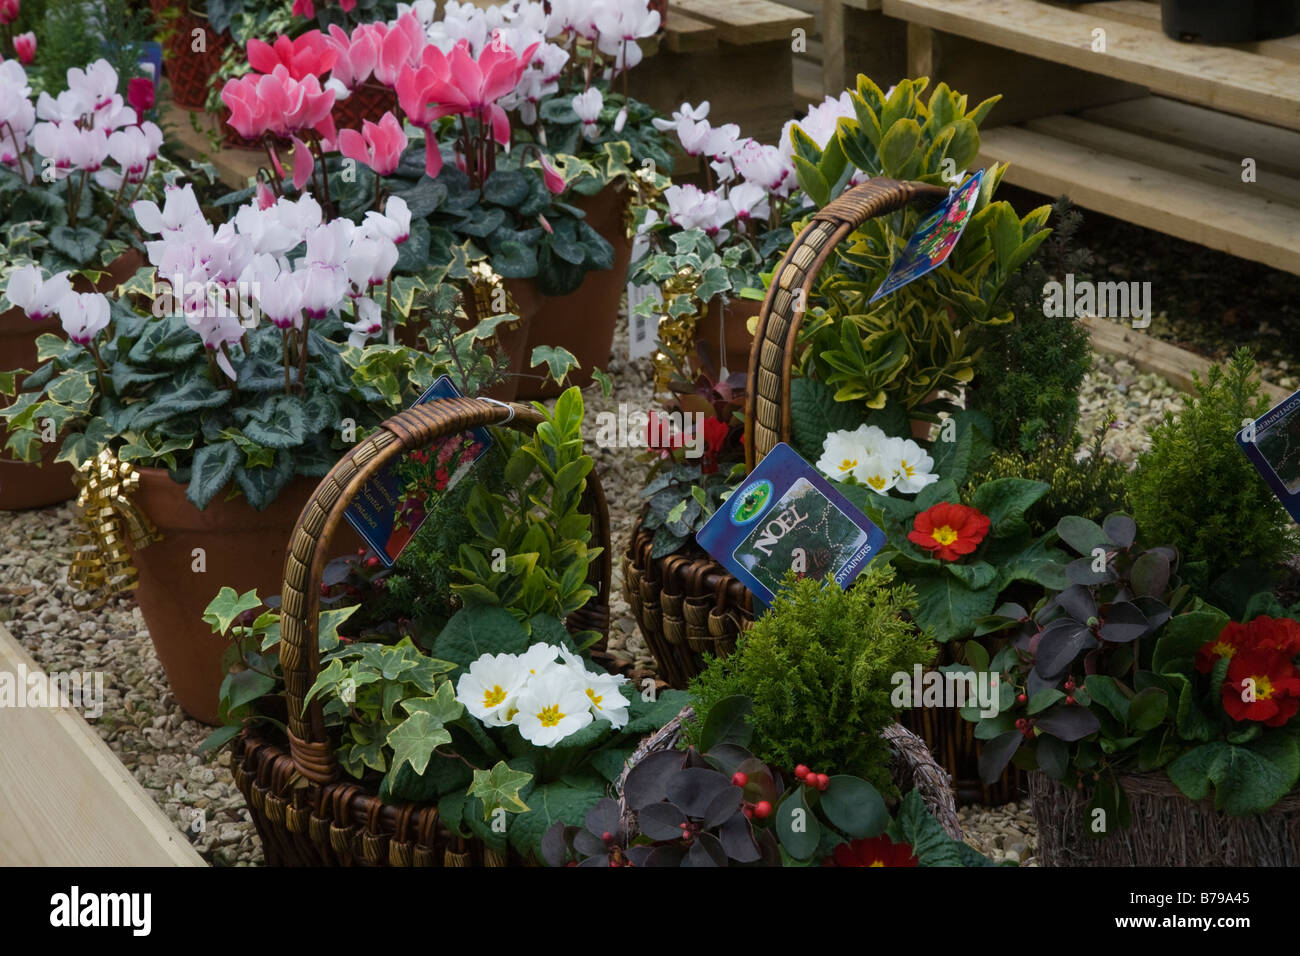 Interiores en el centro del jardín, plantas en cestas para el comercio de Navidad Foto de stock